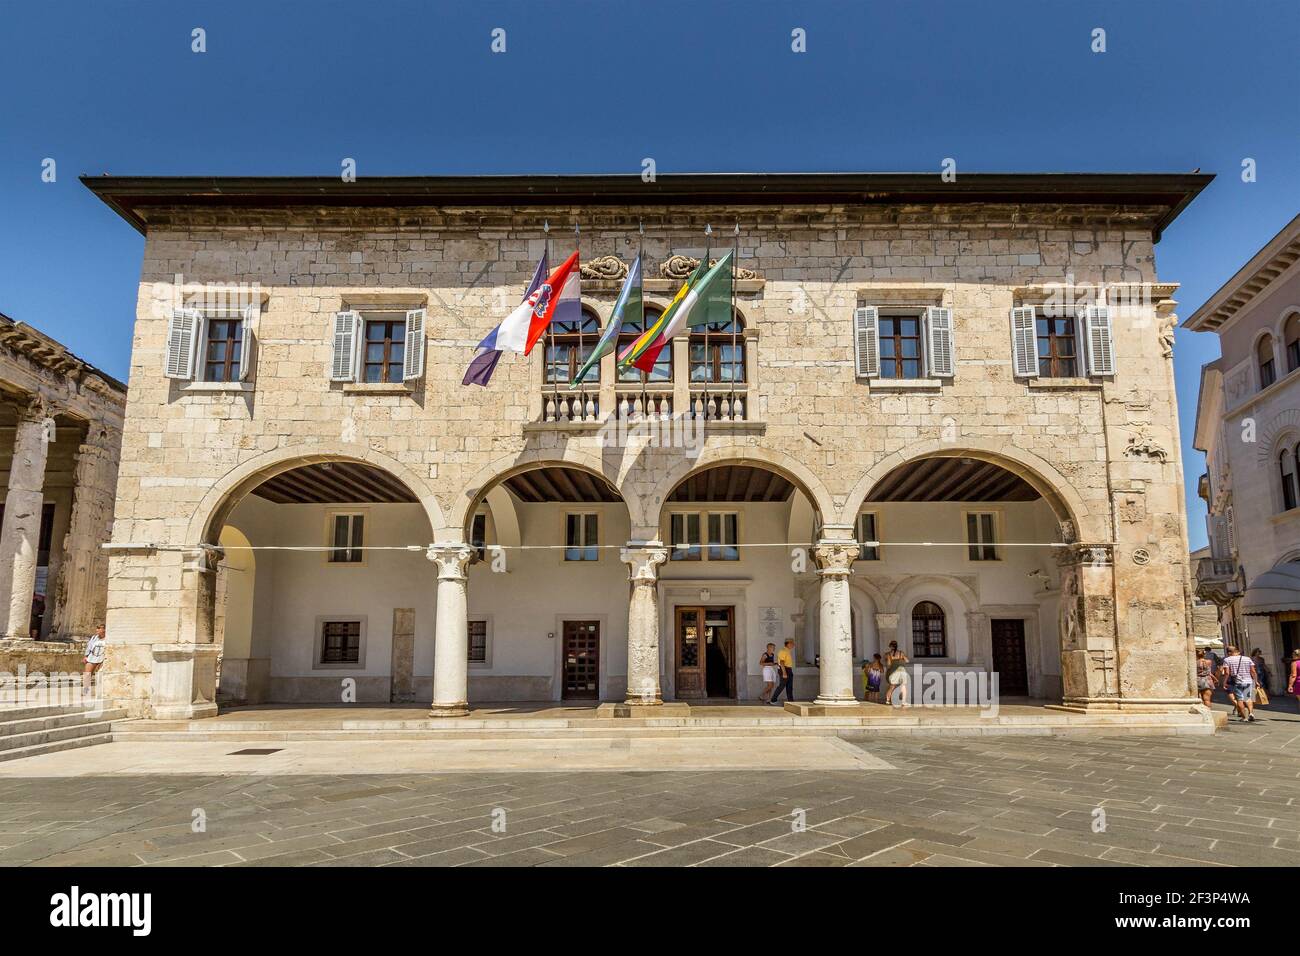 L'Hôtel de ville - Bureau du Gouvernement de la ville de Pula, - Gradska uprava - place du Forum , Pula, péninsule Istrienne, Croatie Banque D'Images